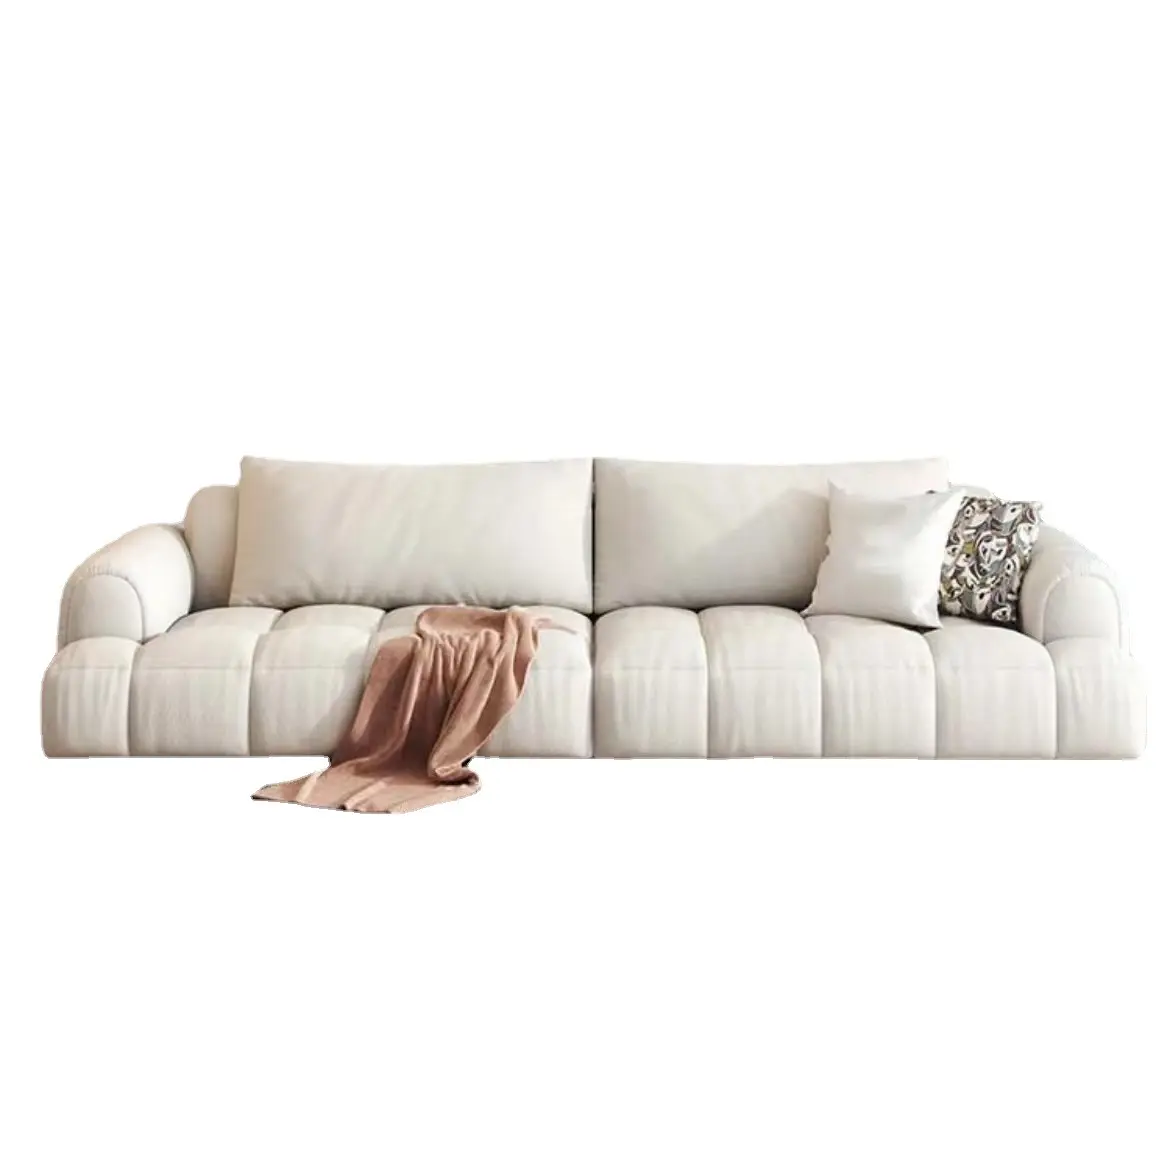 Stile semplice europeo arte del panno moderno semplice soggiorno mobili piccolo piatto a doppia fila divano a forma di L